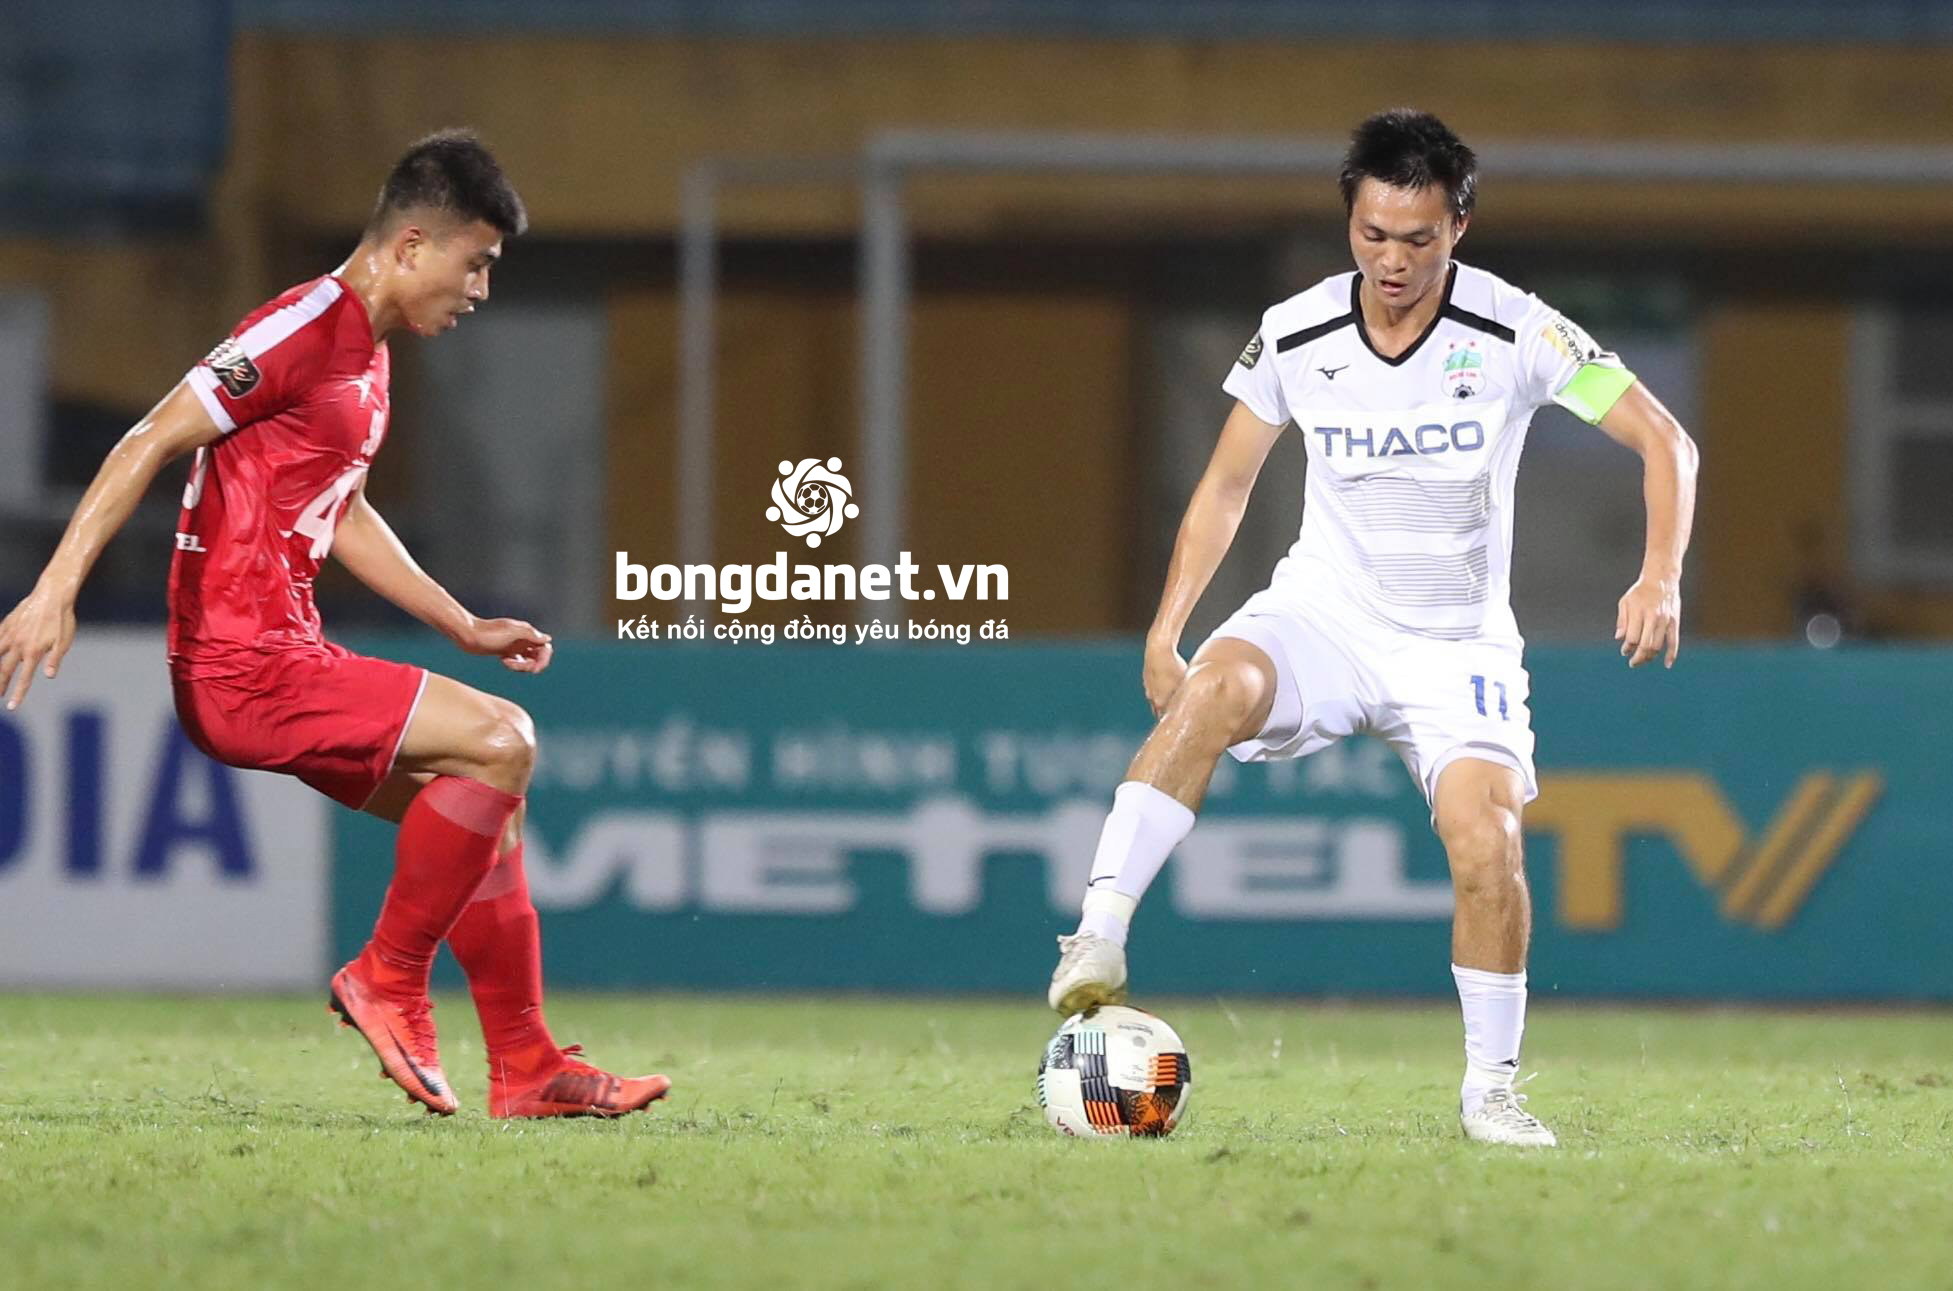 Lịch thi đấu và trực tiếp vòng 23 V.League 2019: Sài Gòn vs HAGL